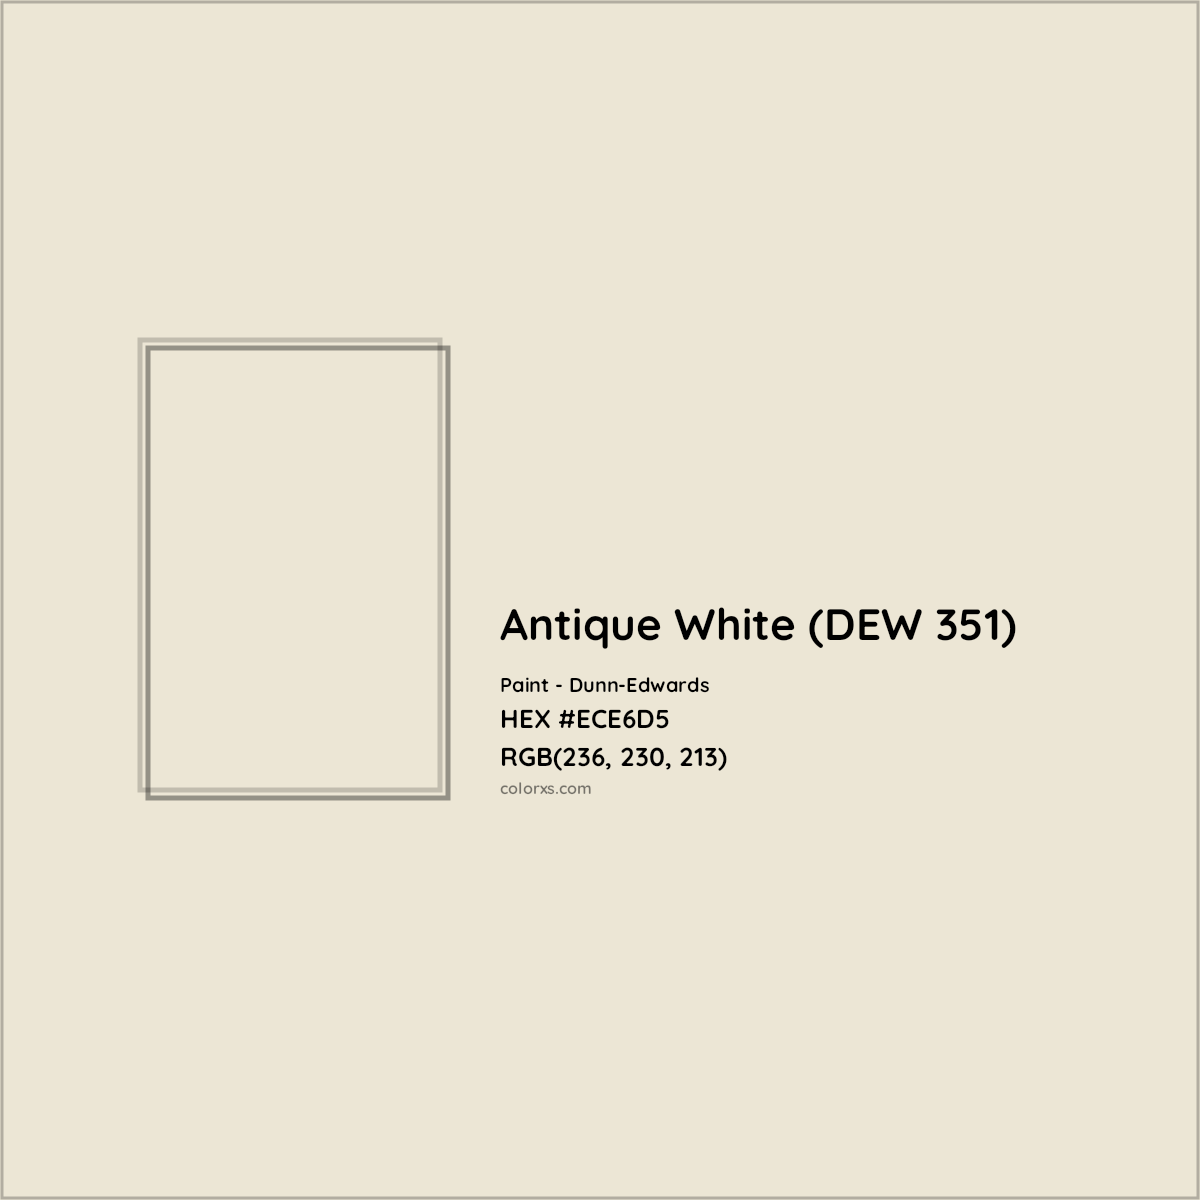 HEX #ECE6D5 Antique White (DEW 351) Paint Dunn-Edwards - Color Code